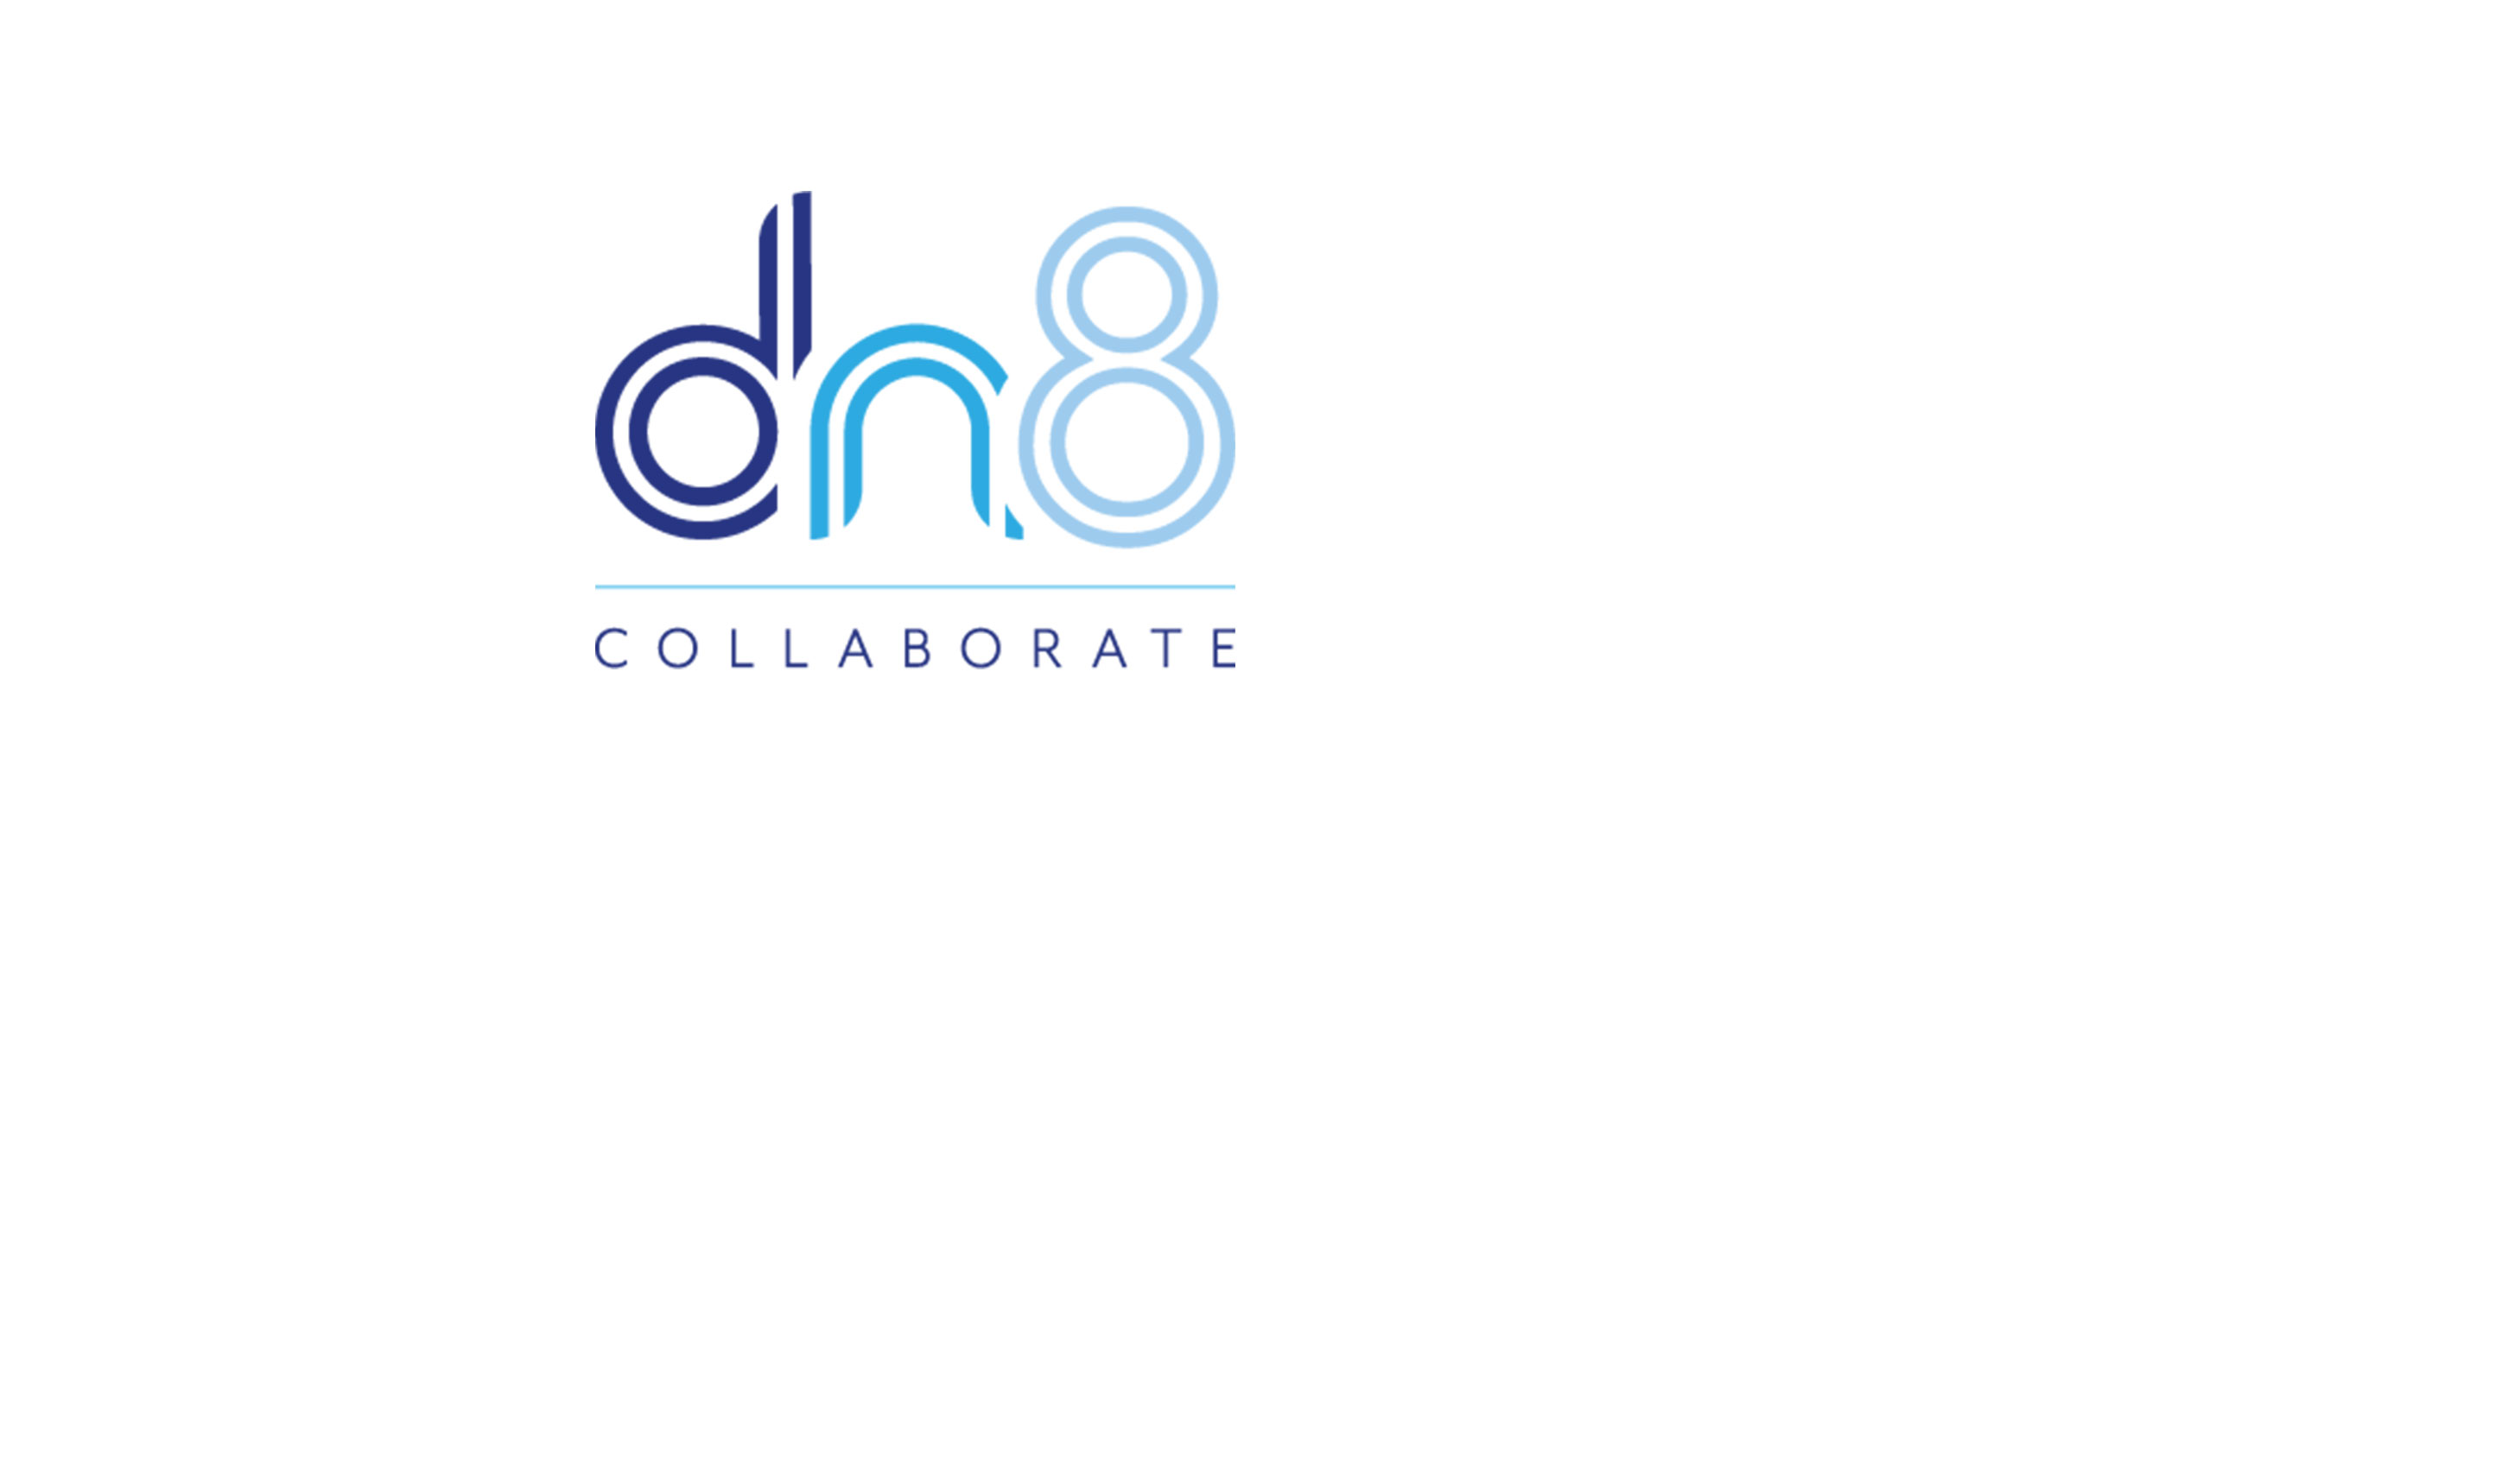 dn8-logo-background.jpg